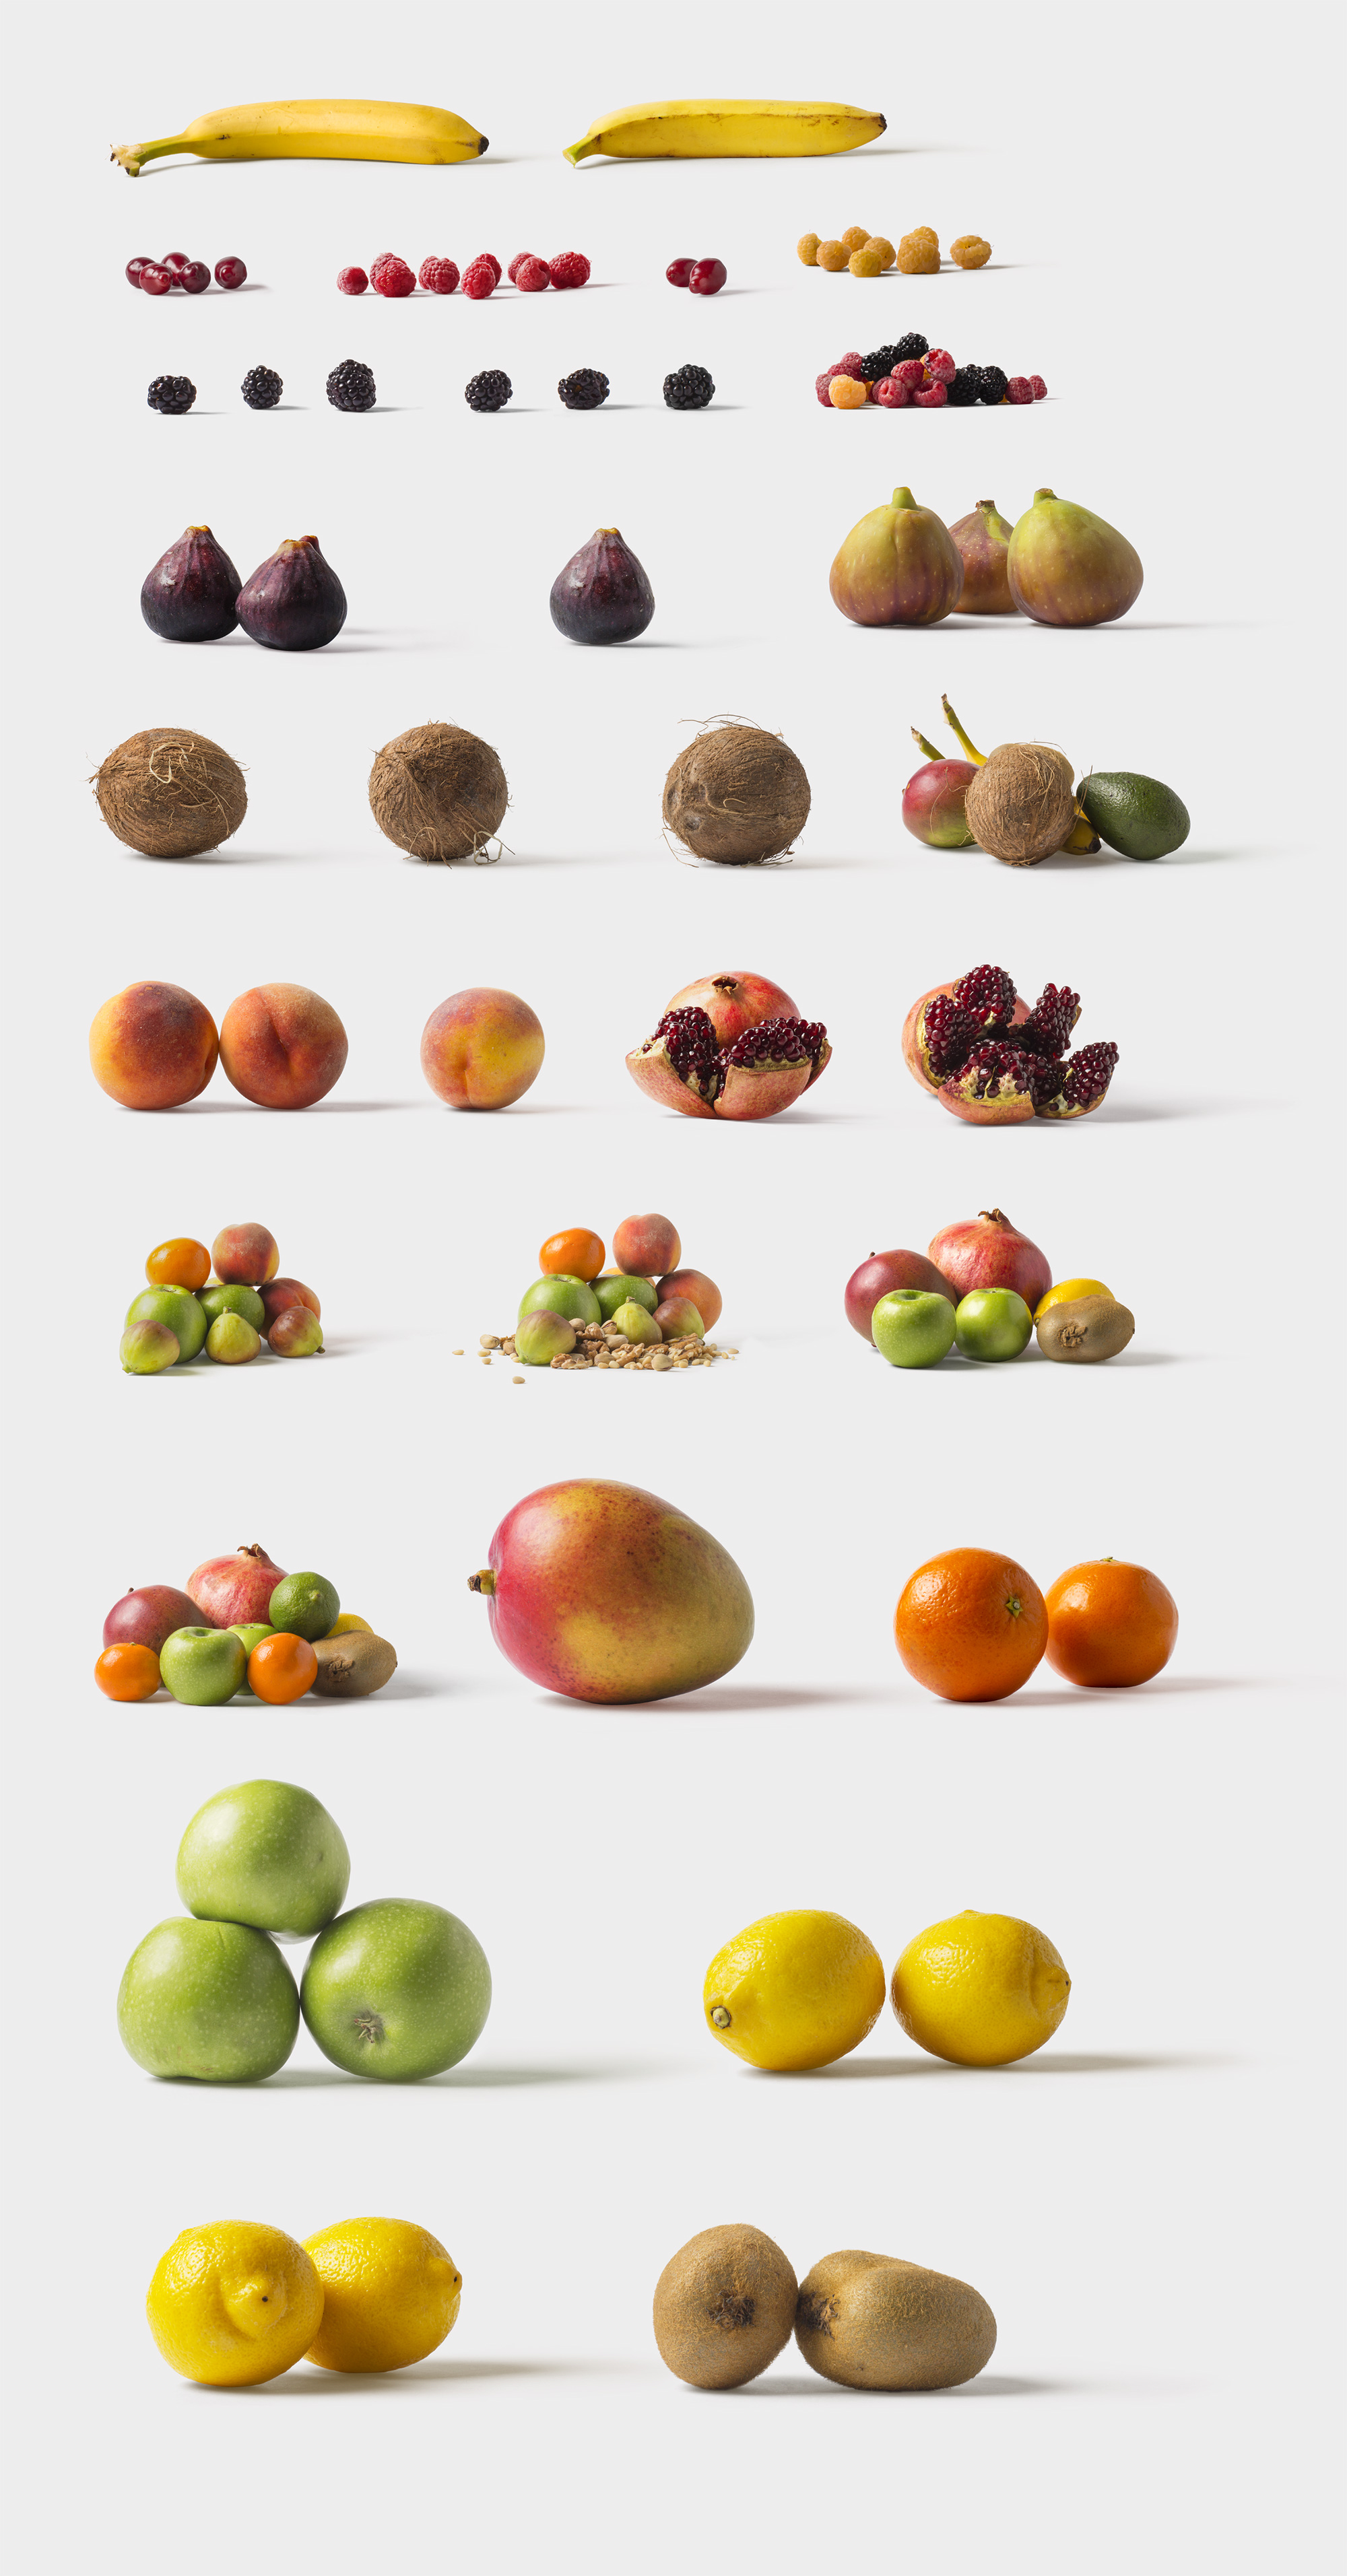 海量蔬菜水果高清实物照片样机素材Fruits and Vegetables插图(6)